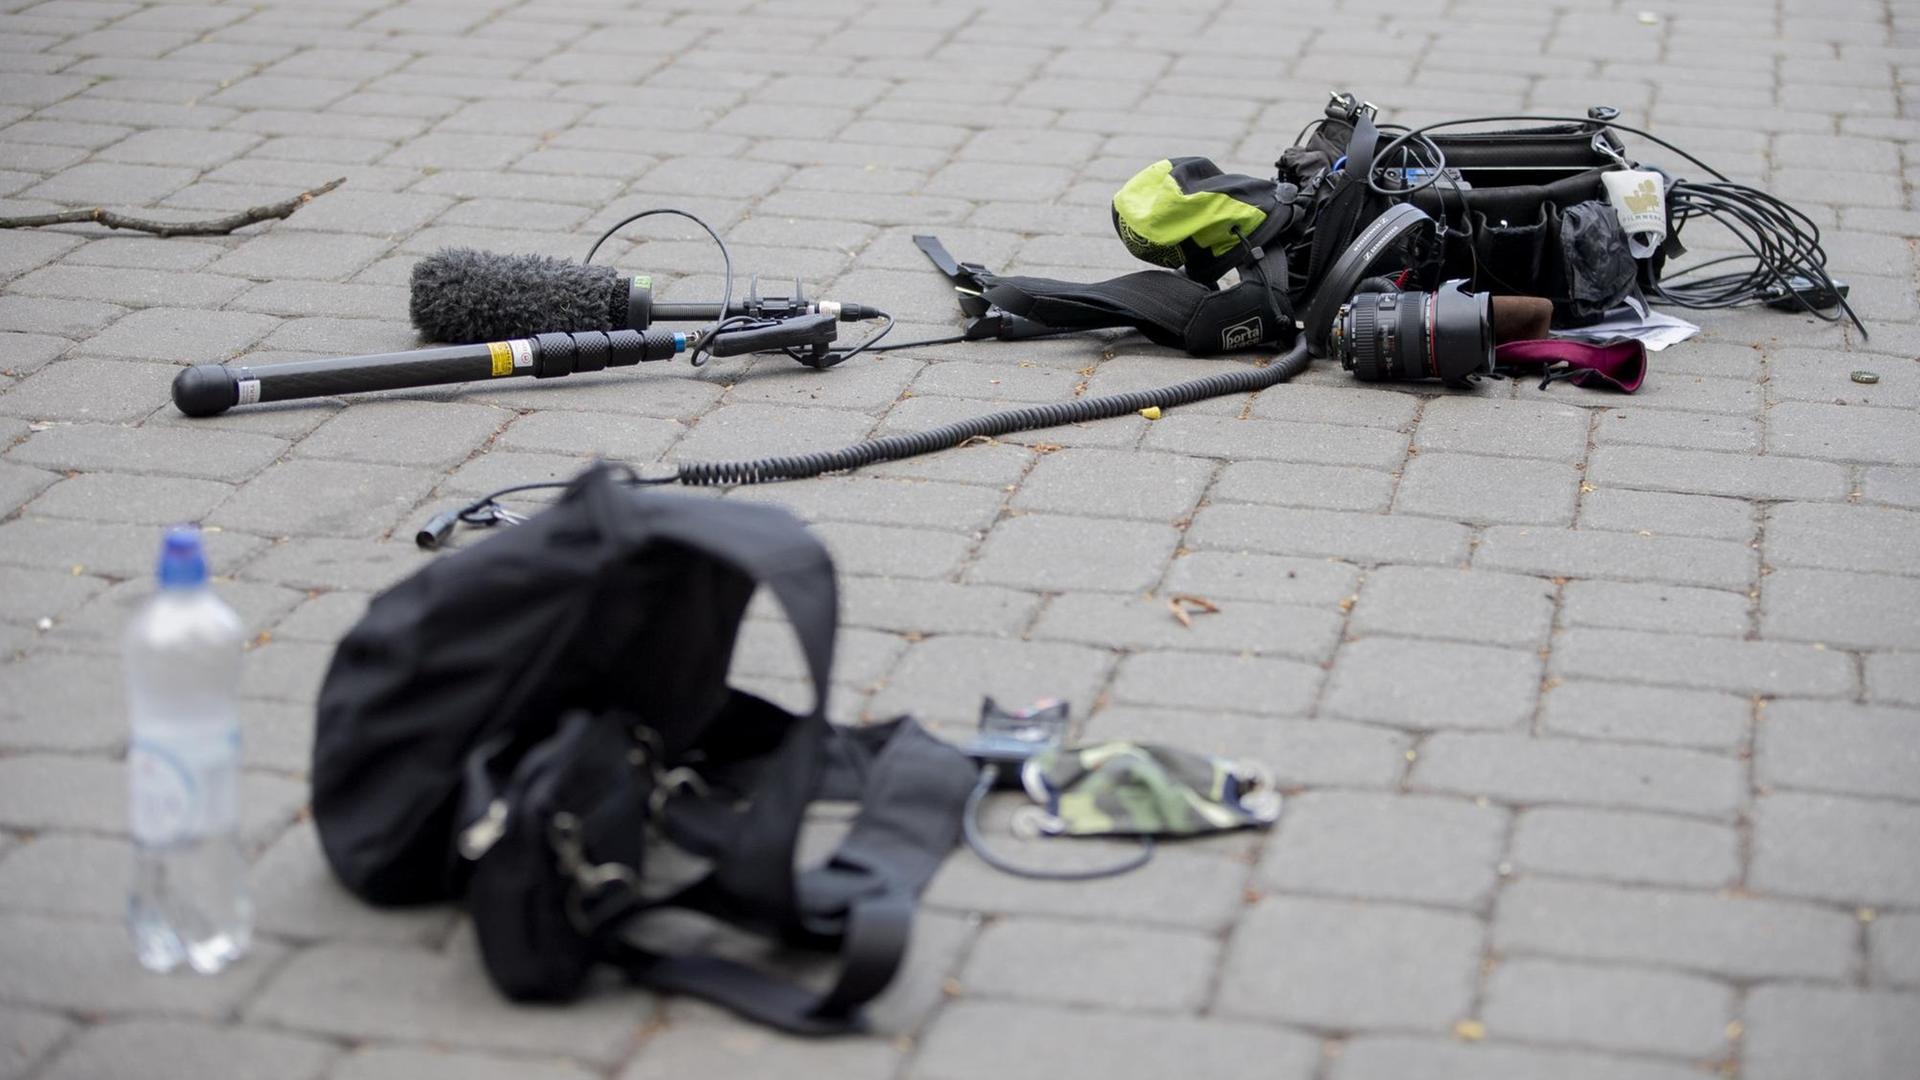 Berlin: Die Ausrüstung eines Kamerateams liegt nach einem Übergriff zwischen Alexanderplatz und Hackescher Markt auf dem Boden.